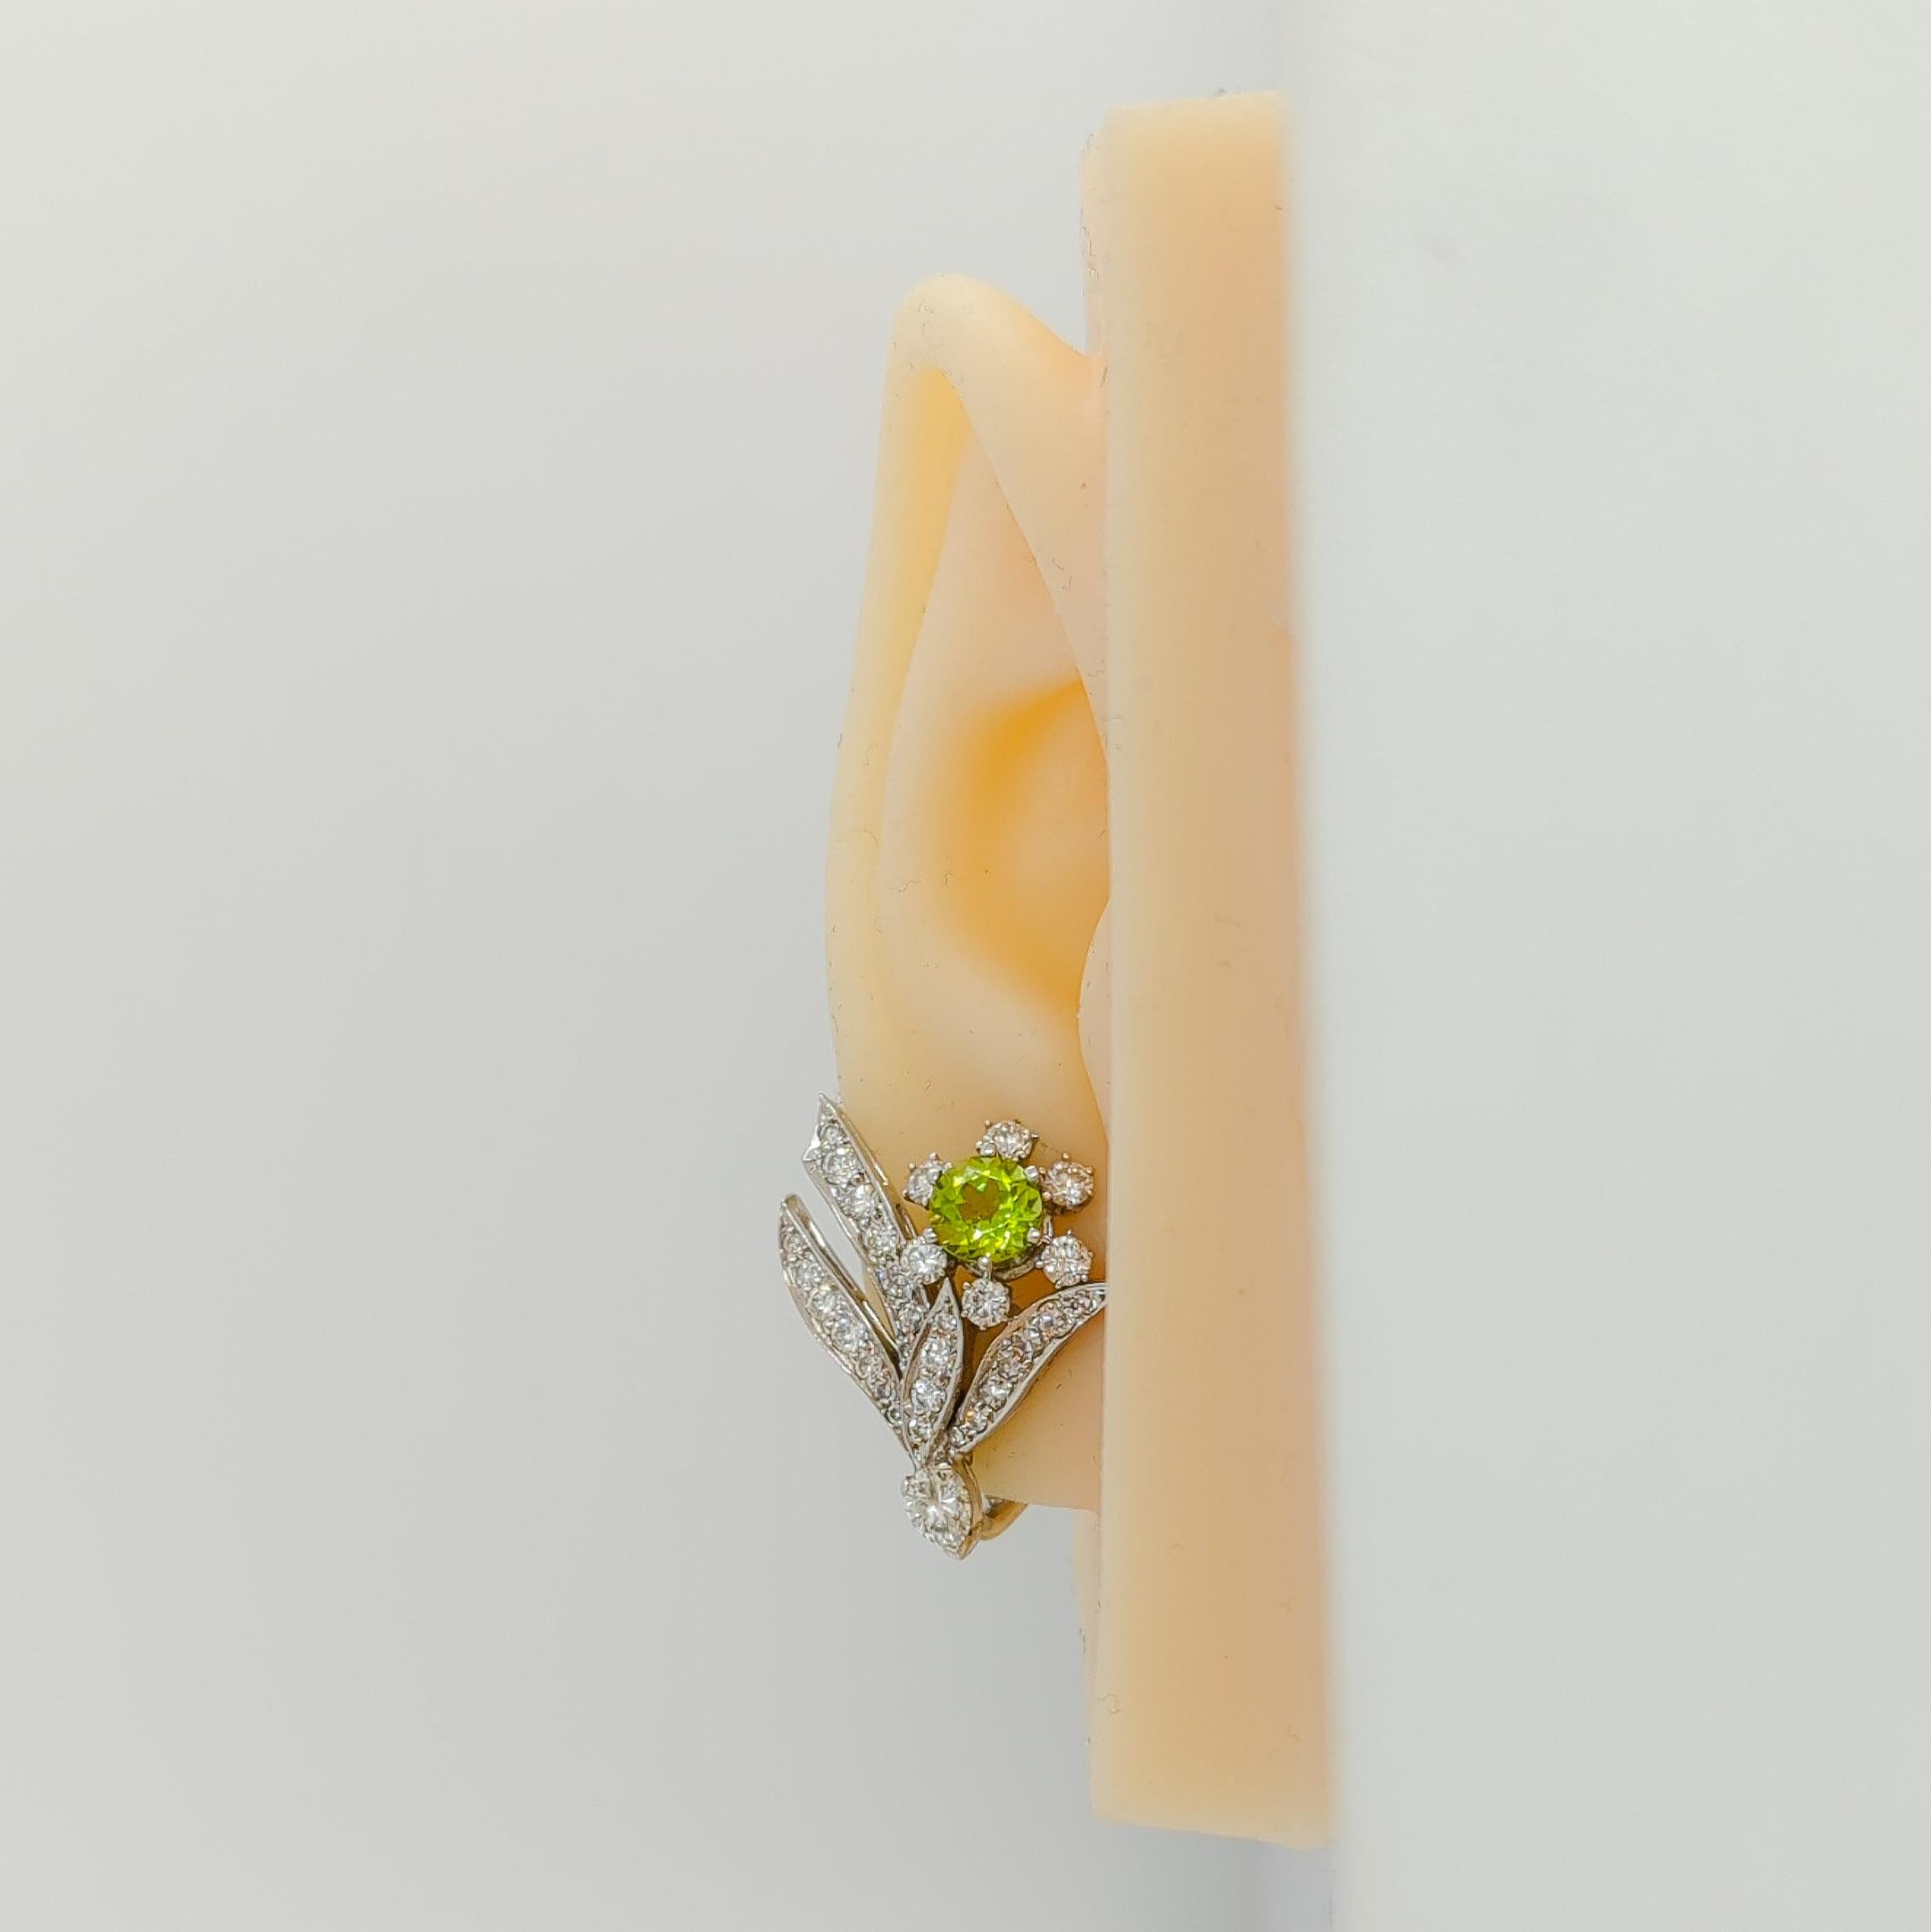 Wunderschöne Ohrringe mit runden Peridots von 1,25 Karat, runden weißen Diamanten guter Qualität und Marquisen.  Handgefertigt in Platin.  Diese Blumenohrringe sind eine großartige Ergänzung für jede Schmucksammlung.